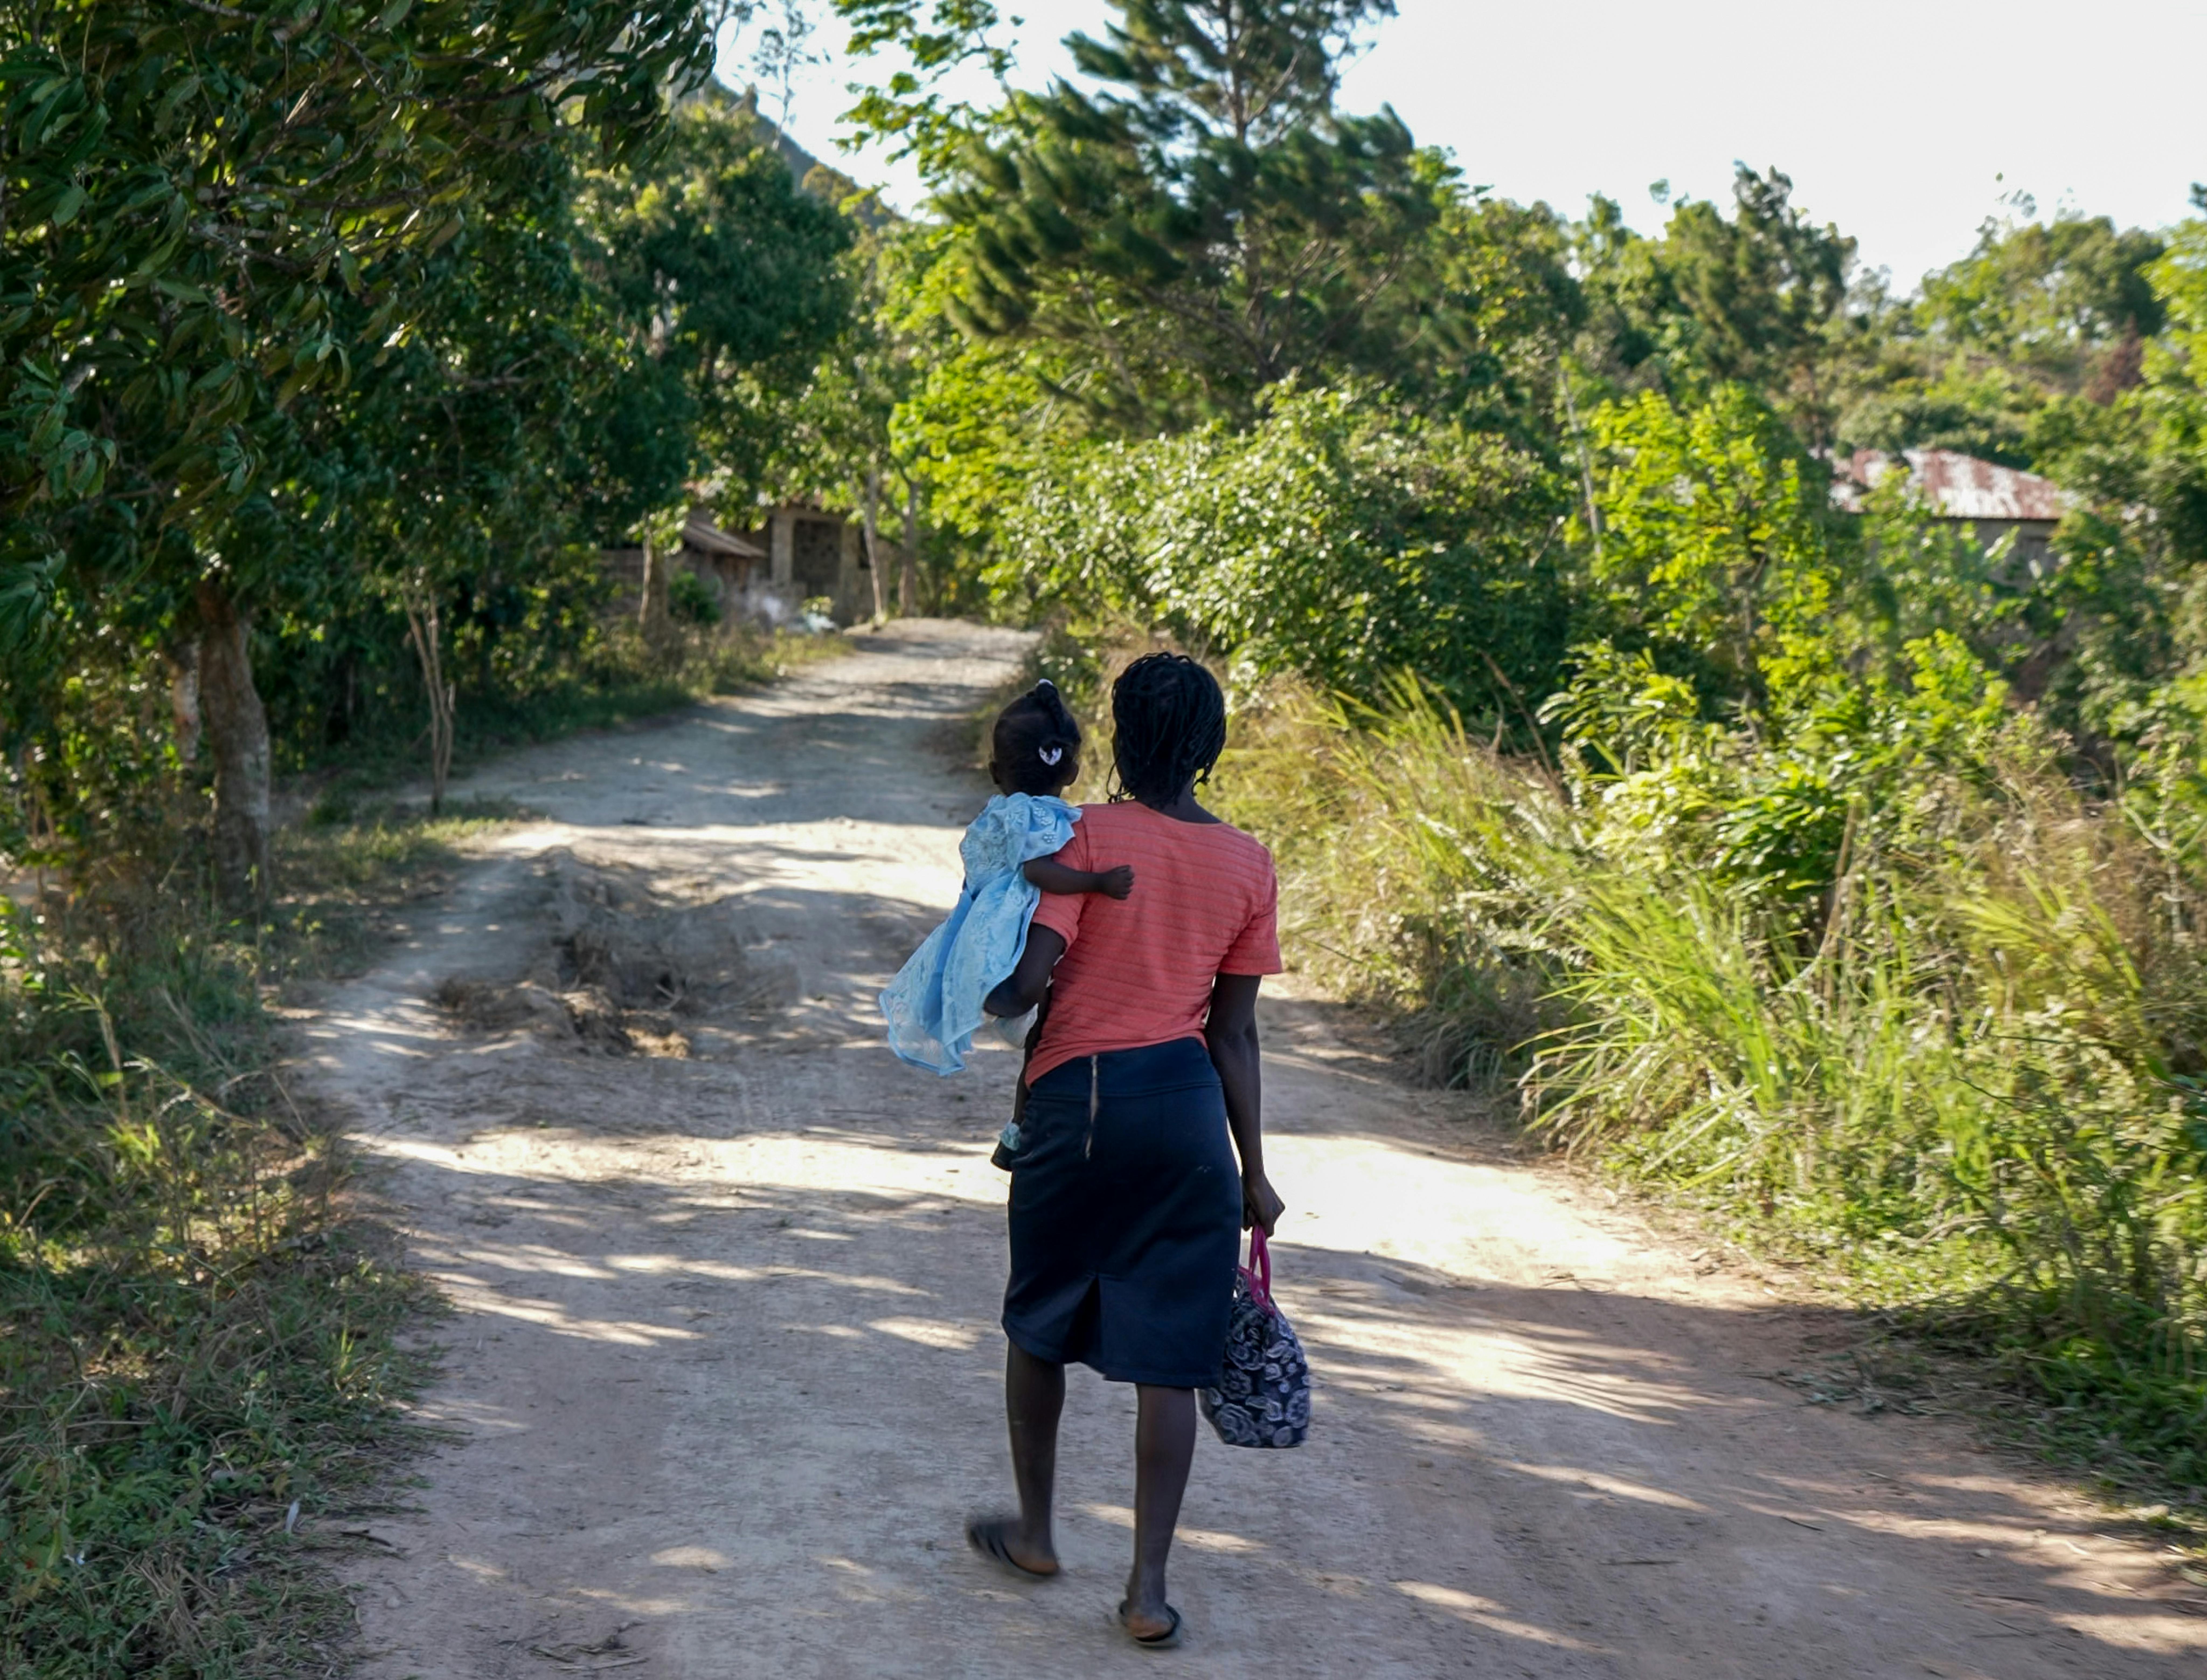 Haiti - Adeline, 27 anni, madre di tre figli, vive in condizioni difficili a Grandon. La più piccola dei suoi figli soffre di malnutrizione e Adeline deve recarsi ogni giorno in clinica per le cure